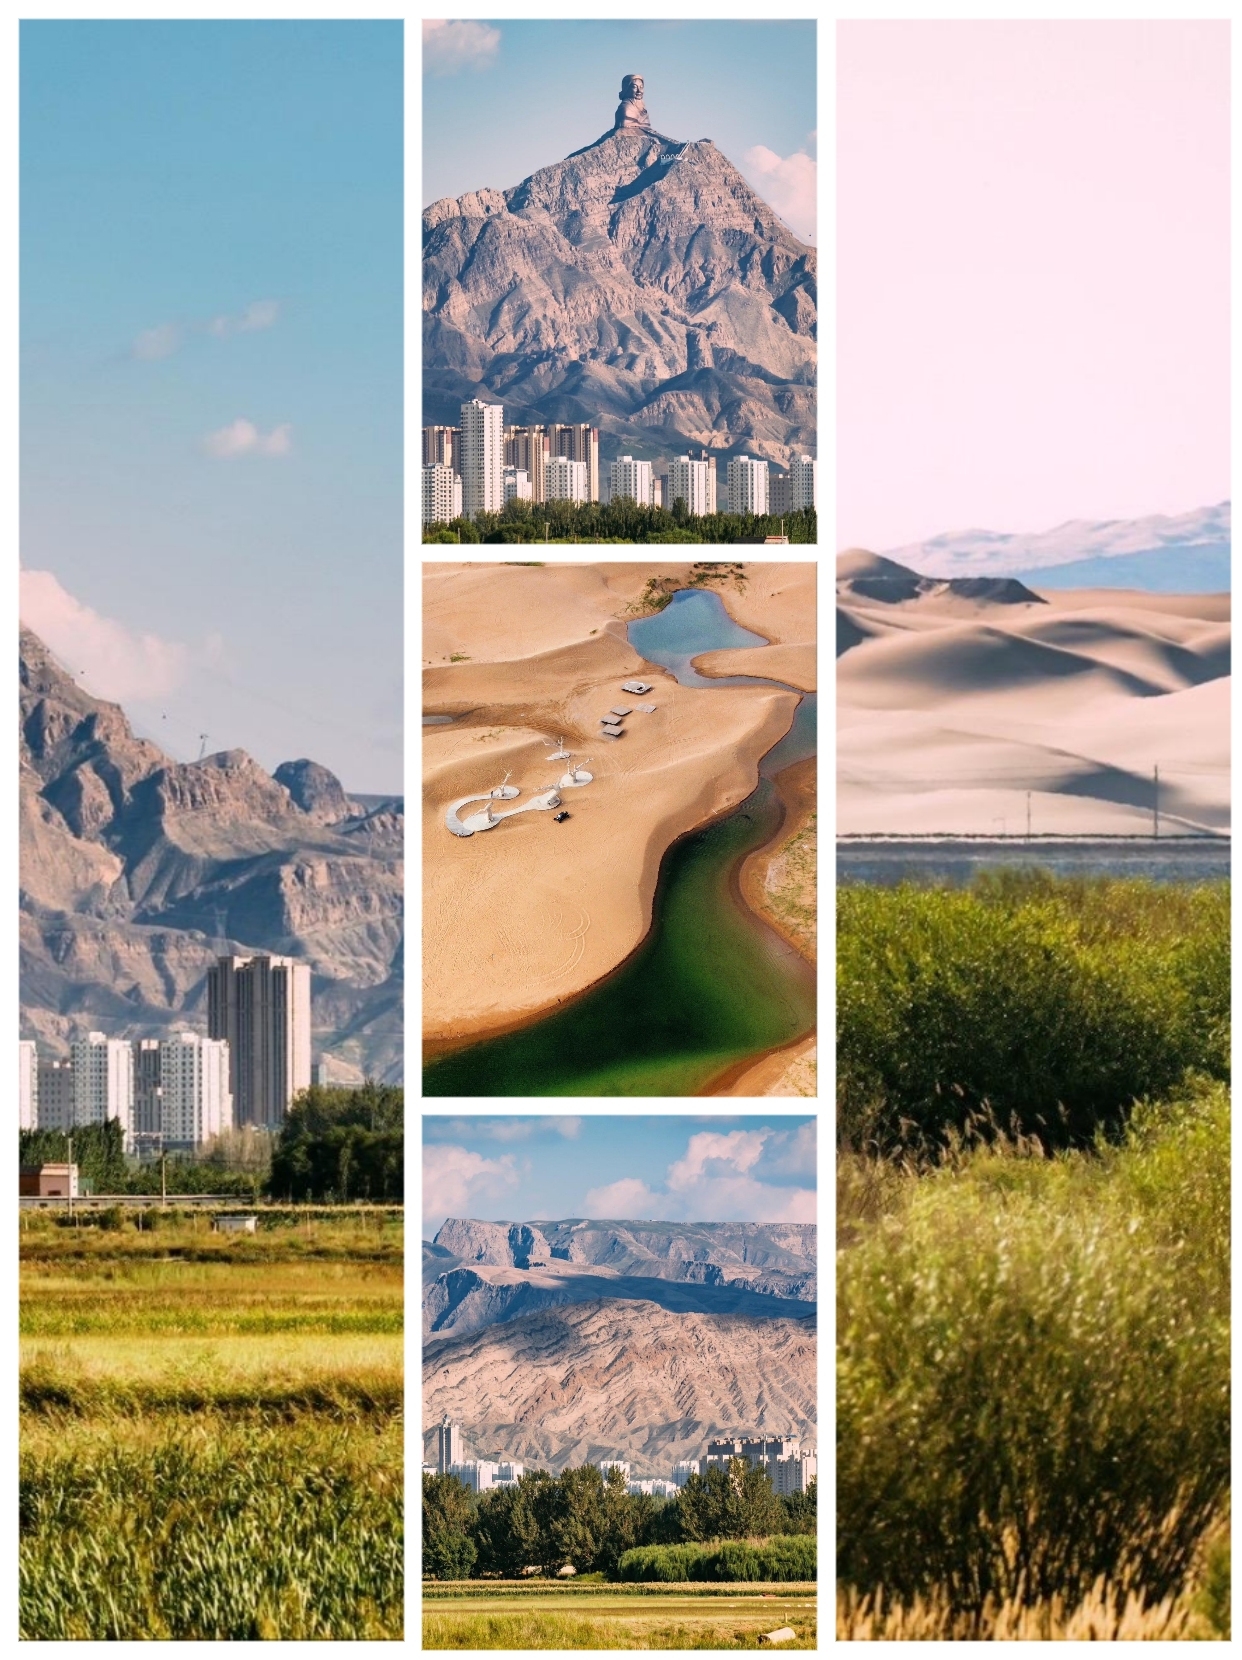 3天乌海游玩攻略，让您全面体验这座位于内蒙古自治区的沙漠绿洲之城及其周边的独特自然风光、文化遗址和休